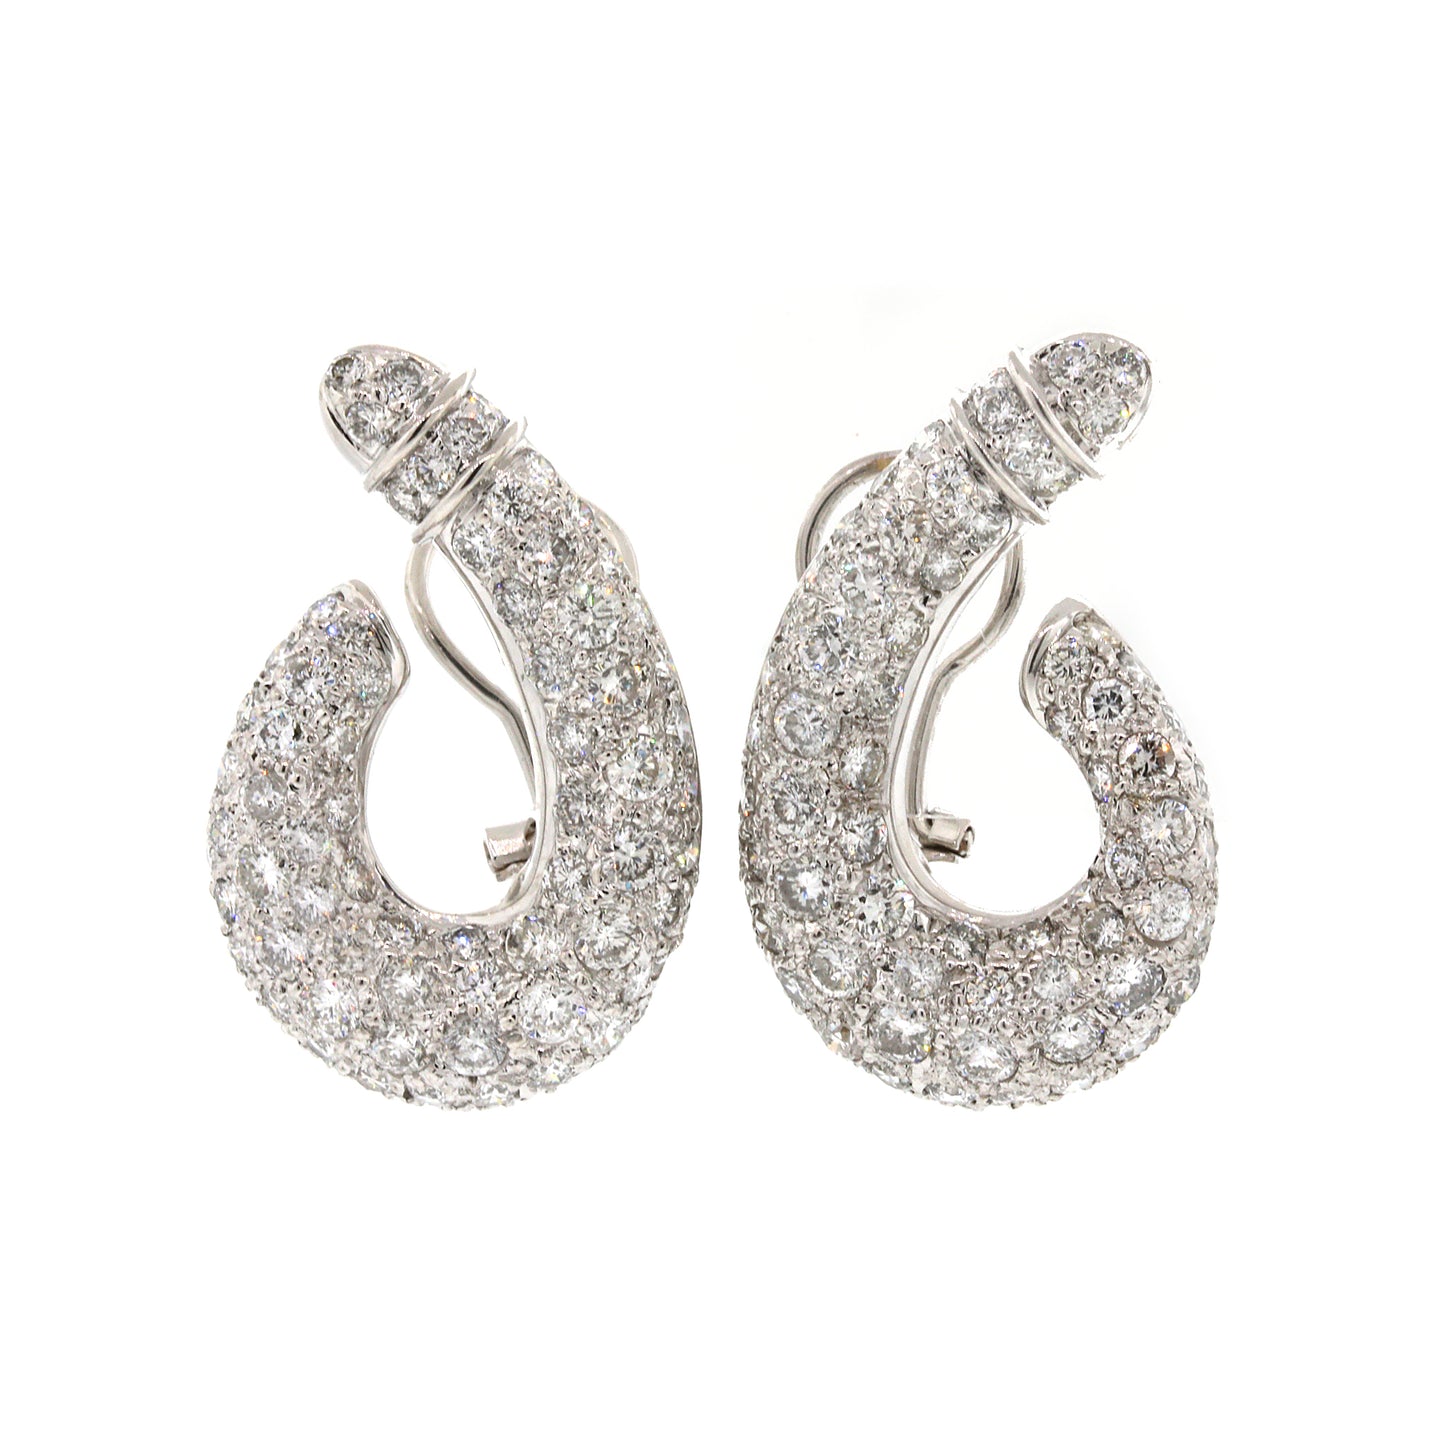 J-Shaped Pave Diamond Earrings